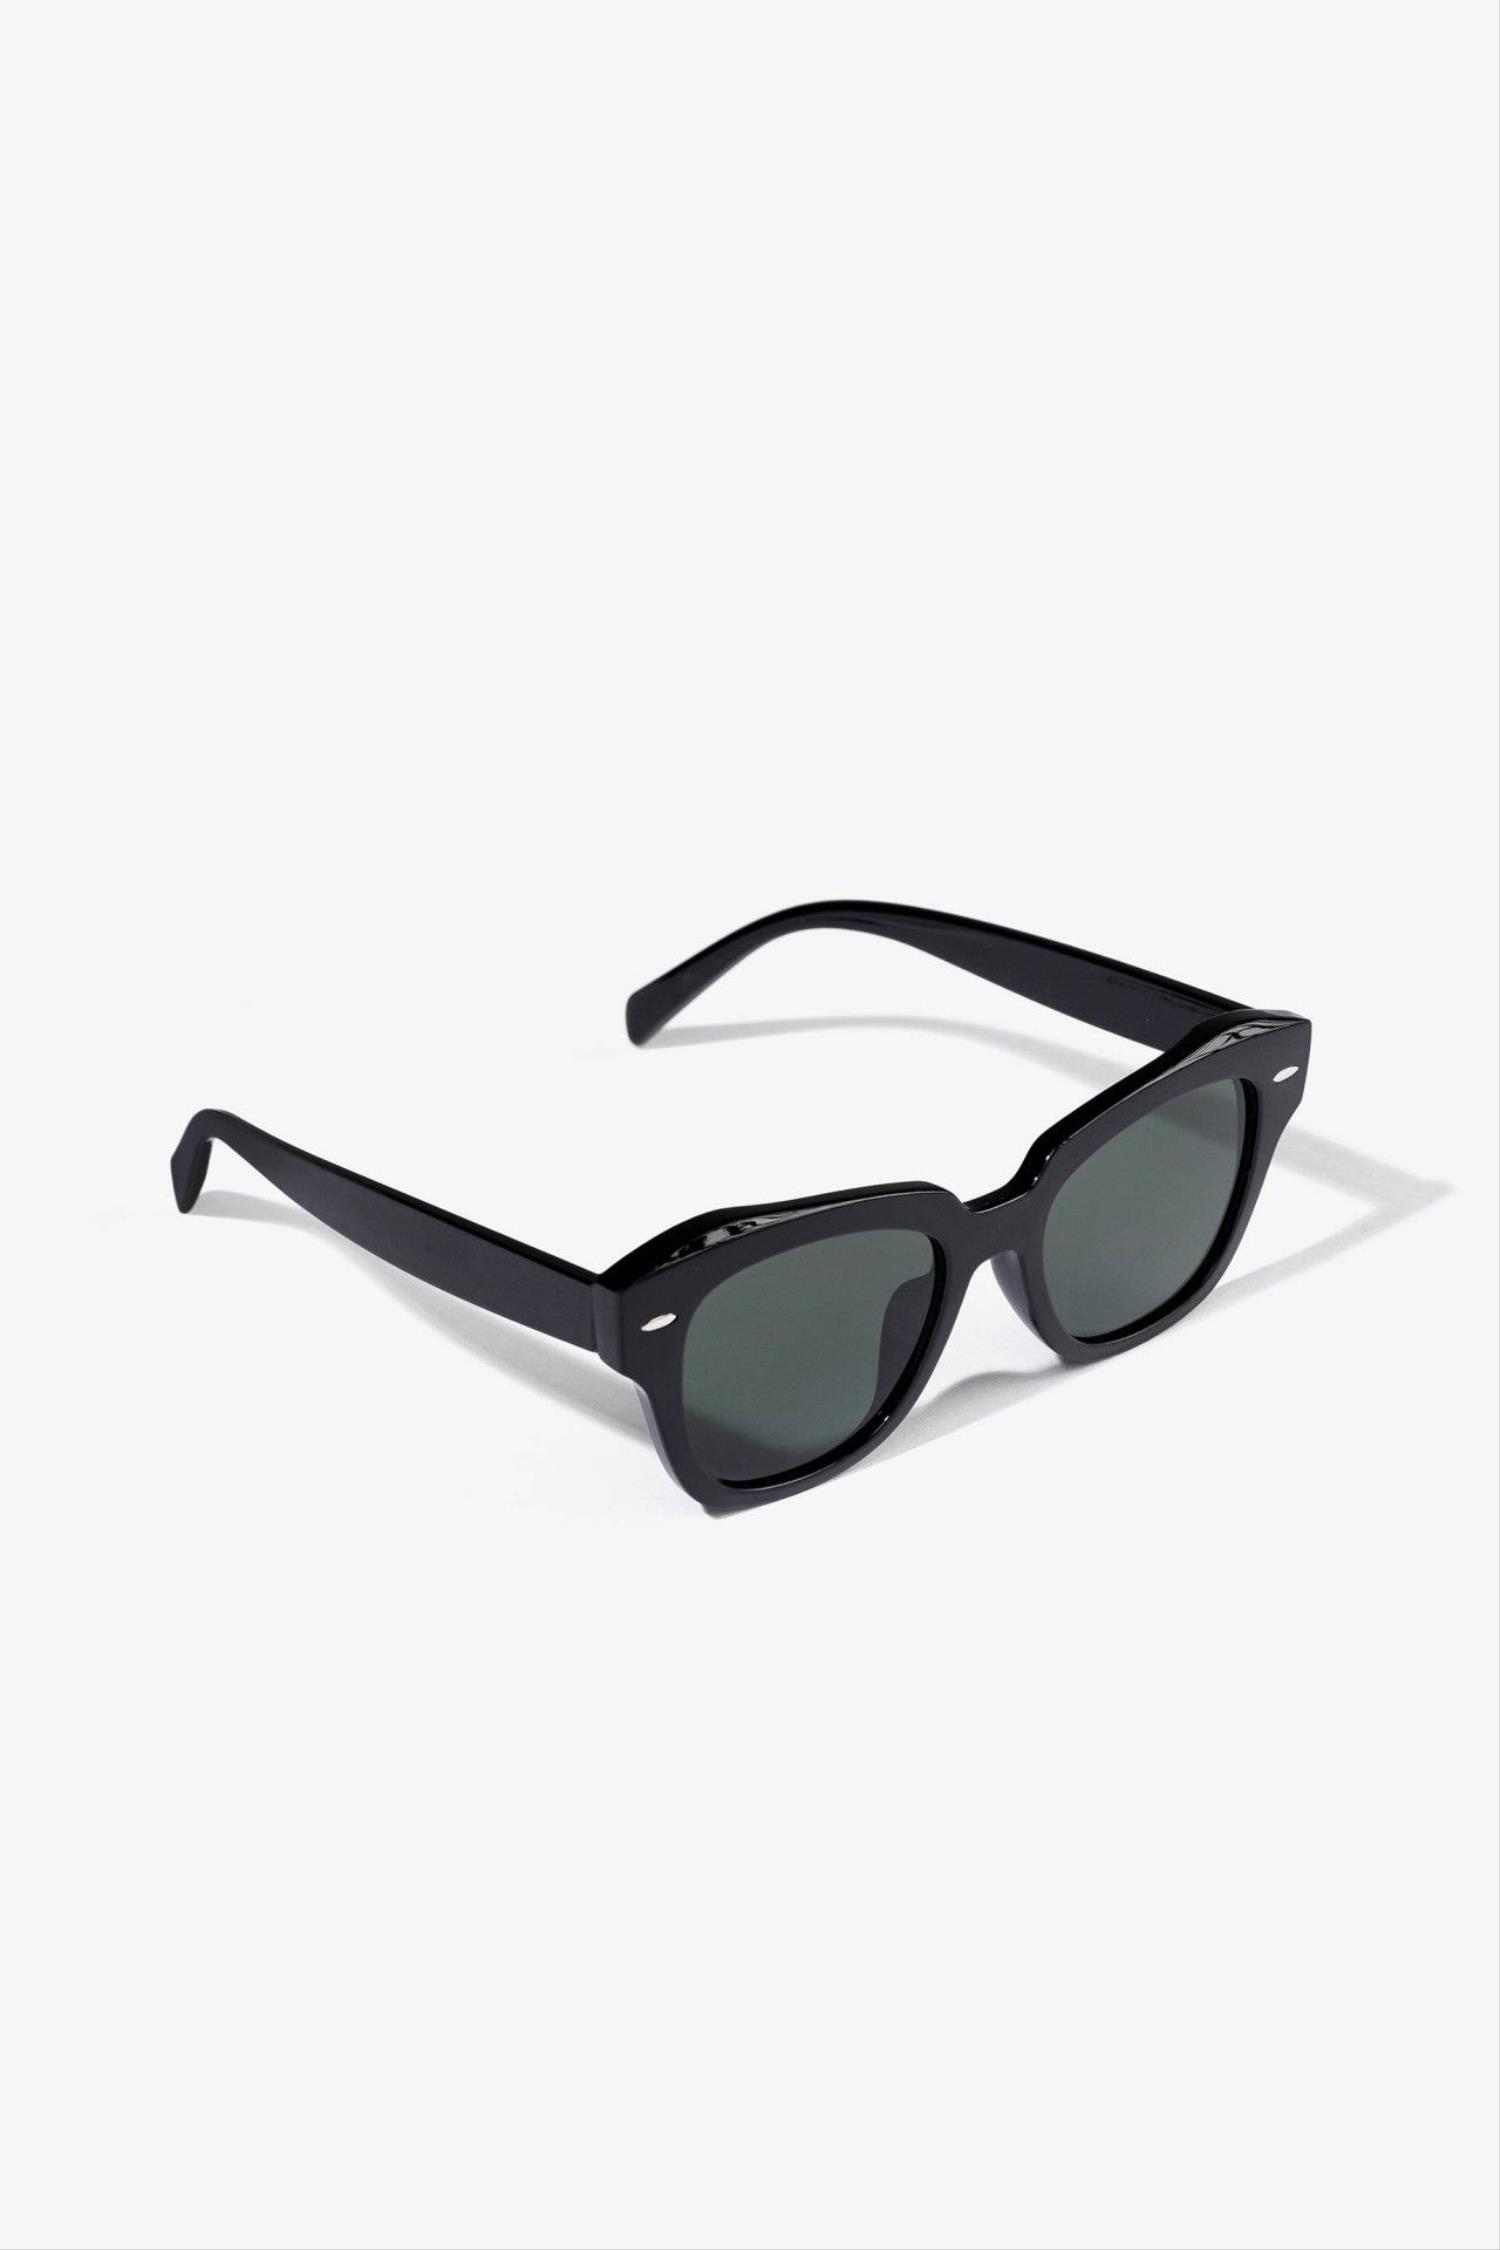 Gafas de sol en color negro de la marca Vilanova con referencia 71007731 000.